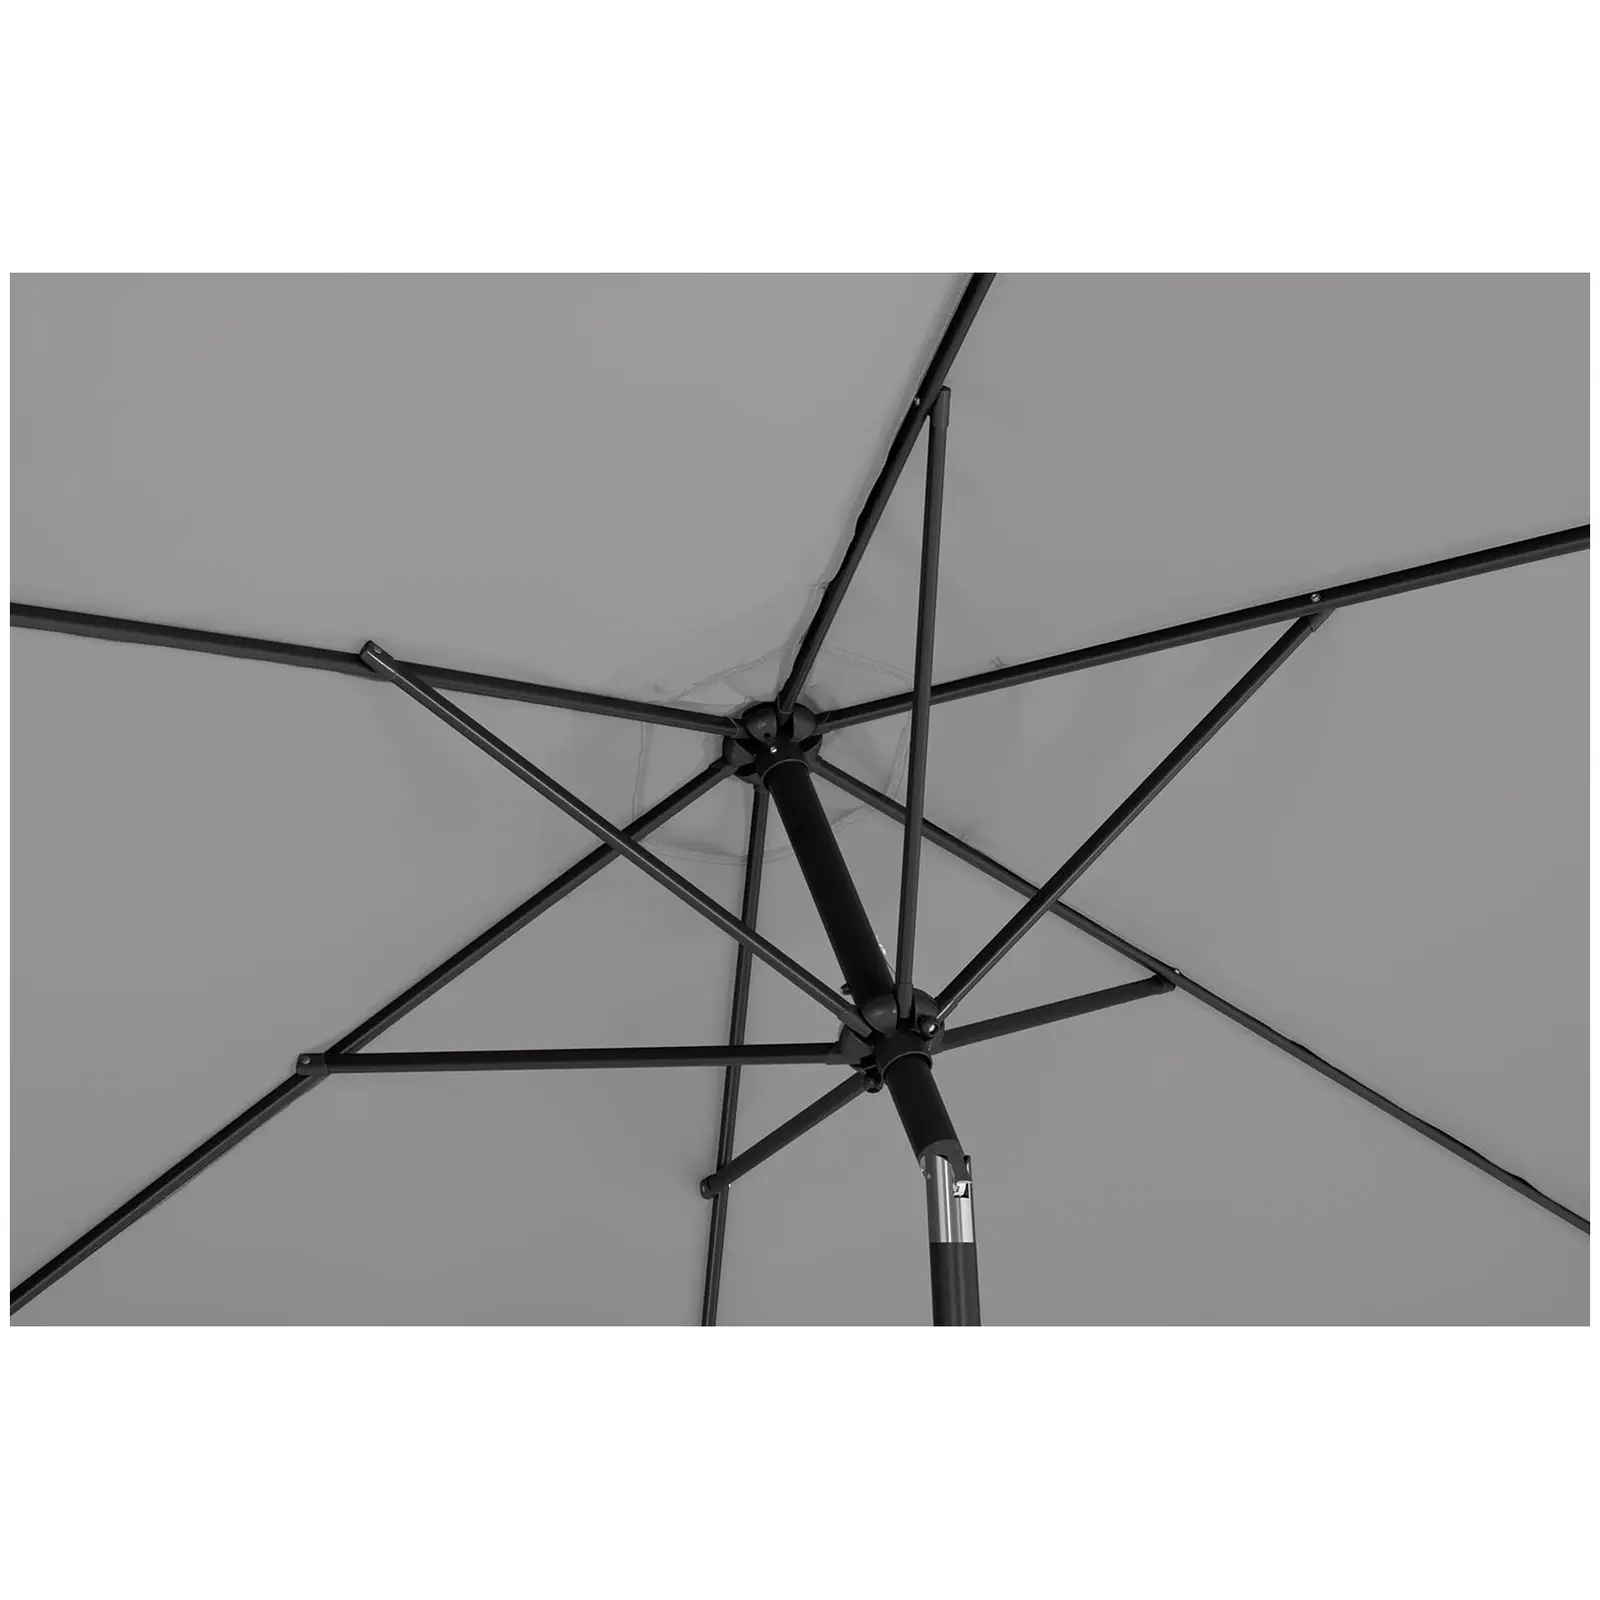 Sombrilla grande - gris oscuro - hexagonal - Ø 270 cm - inclinable